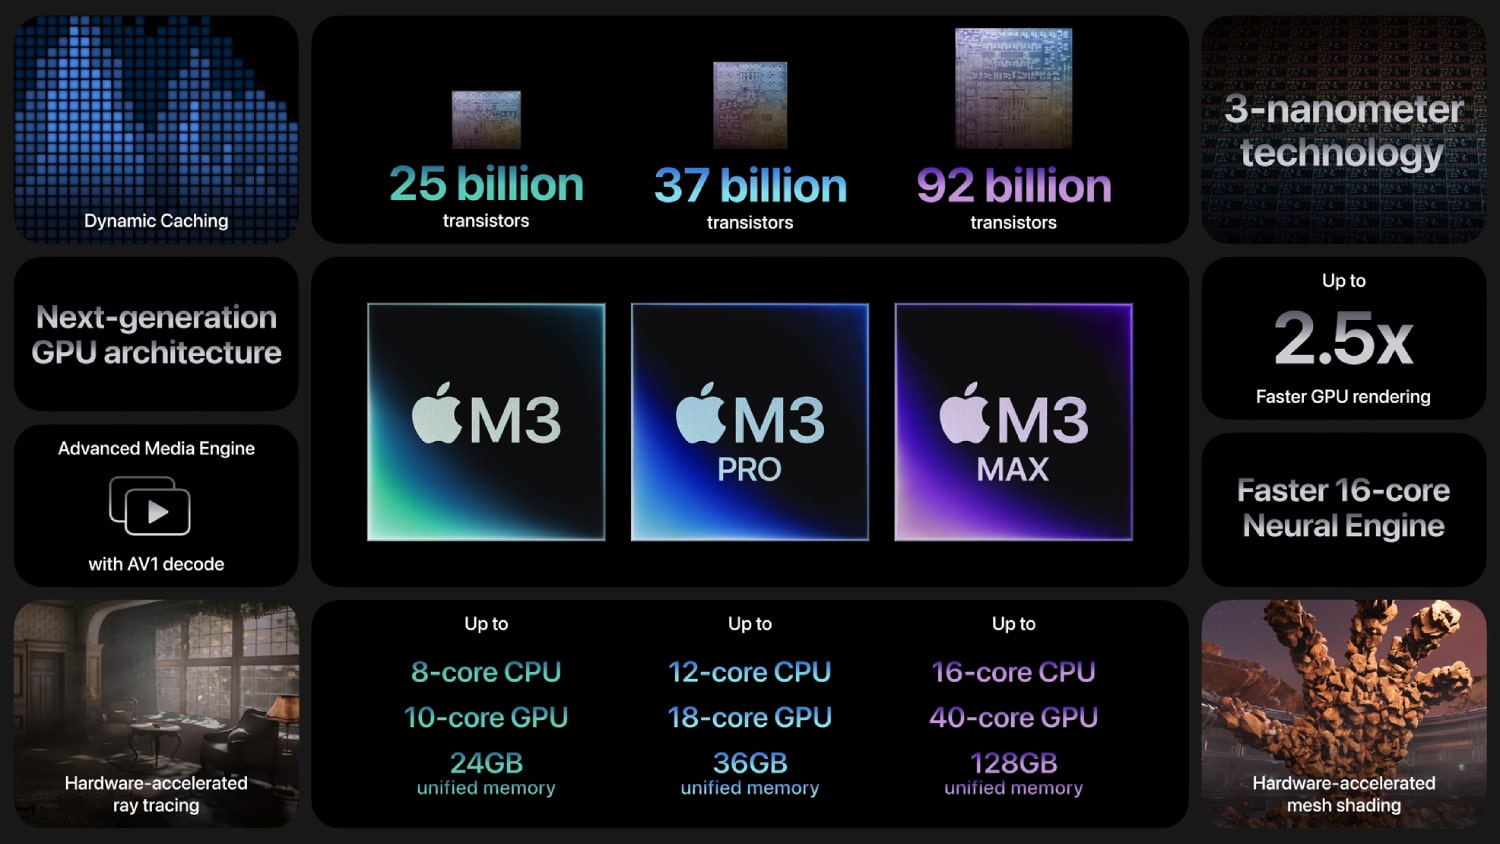 Statistiche e caratteristiche per la serie di chip M3 di Apple, tra cui M3, M3 Pro e M3 Max.